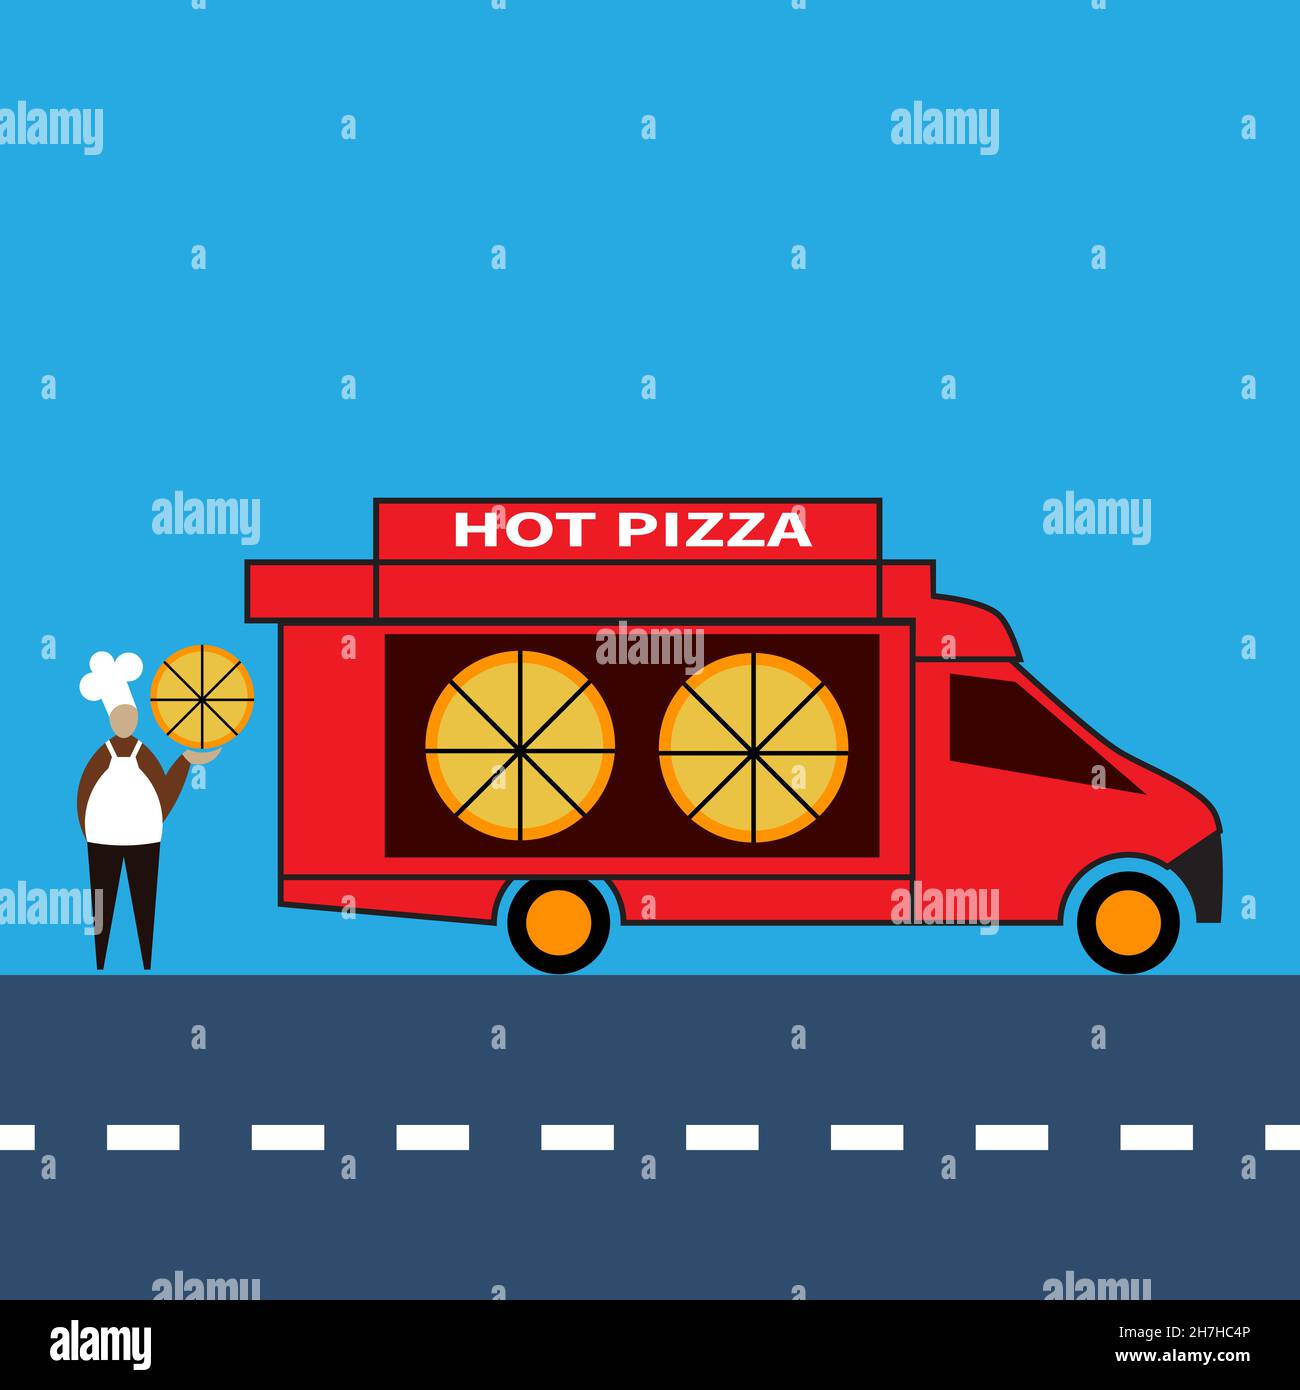 Food Delivery Auto fährt entlang der Autobahn. Lieferwagen. Fertige Pizzas im Autofenster. Sonnenschutz über dem Fenster. Text auf dem Auto - heiße Pizza. Chefkoch Stan Stock Vektor